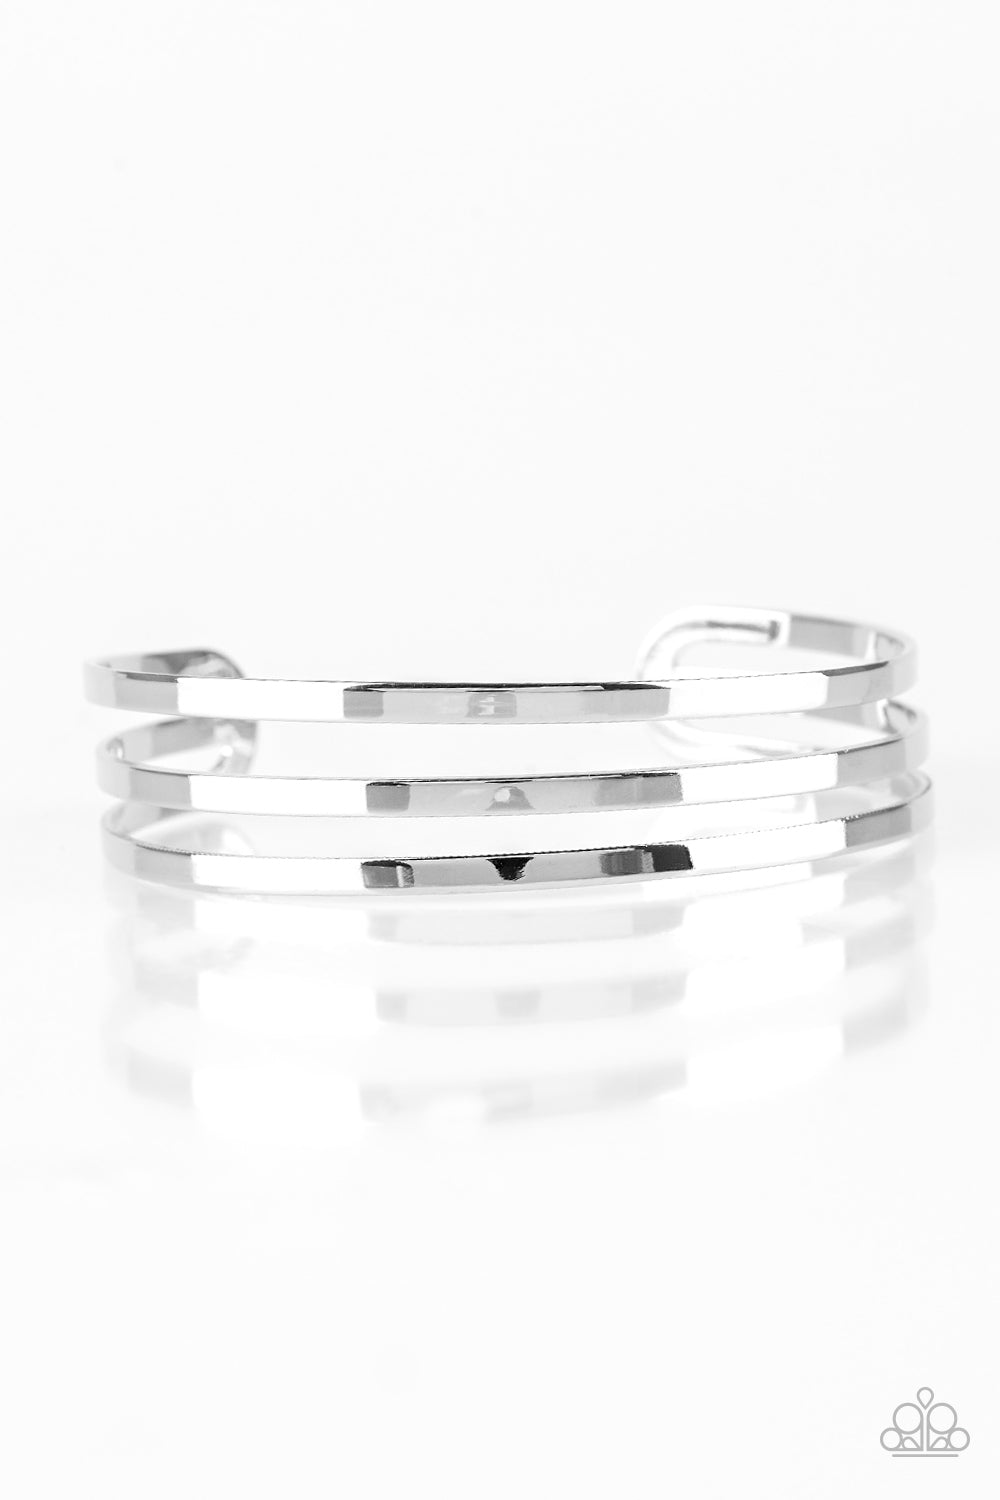 Street Sleek - Silver Cuff Bracelet